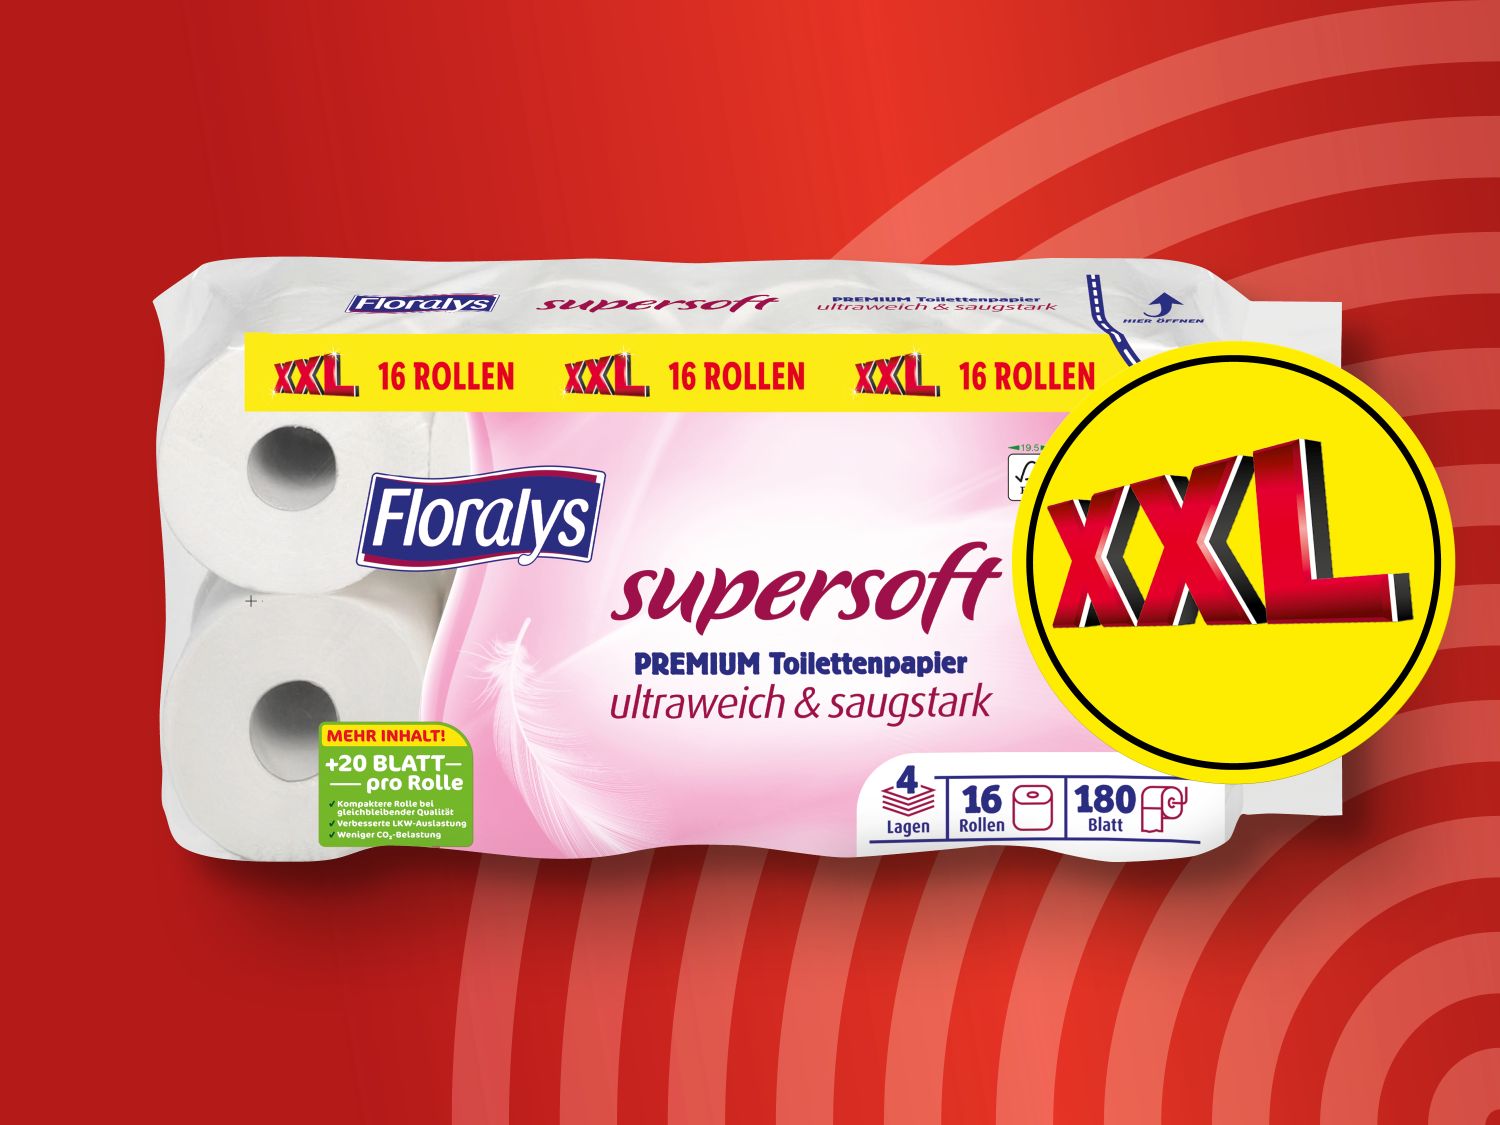 Floralys Supersoft Premium Lidl - XXL Toilettenpapier